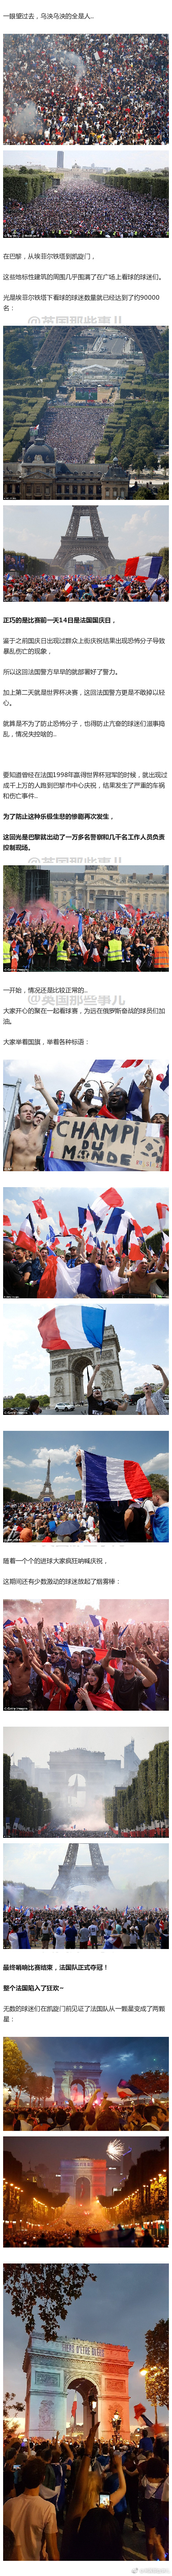 满街烟雾弹，警察被攻击，商店被砸抢……嗨过头的法国球迷们，硬是将好端端的一场庆祝变成了彻夜失控的暴乱… ​​​​